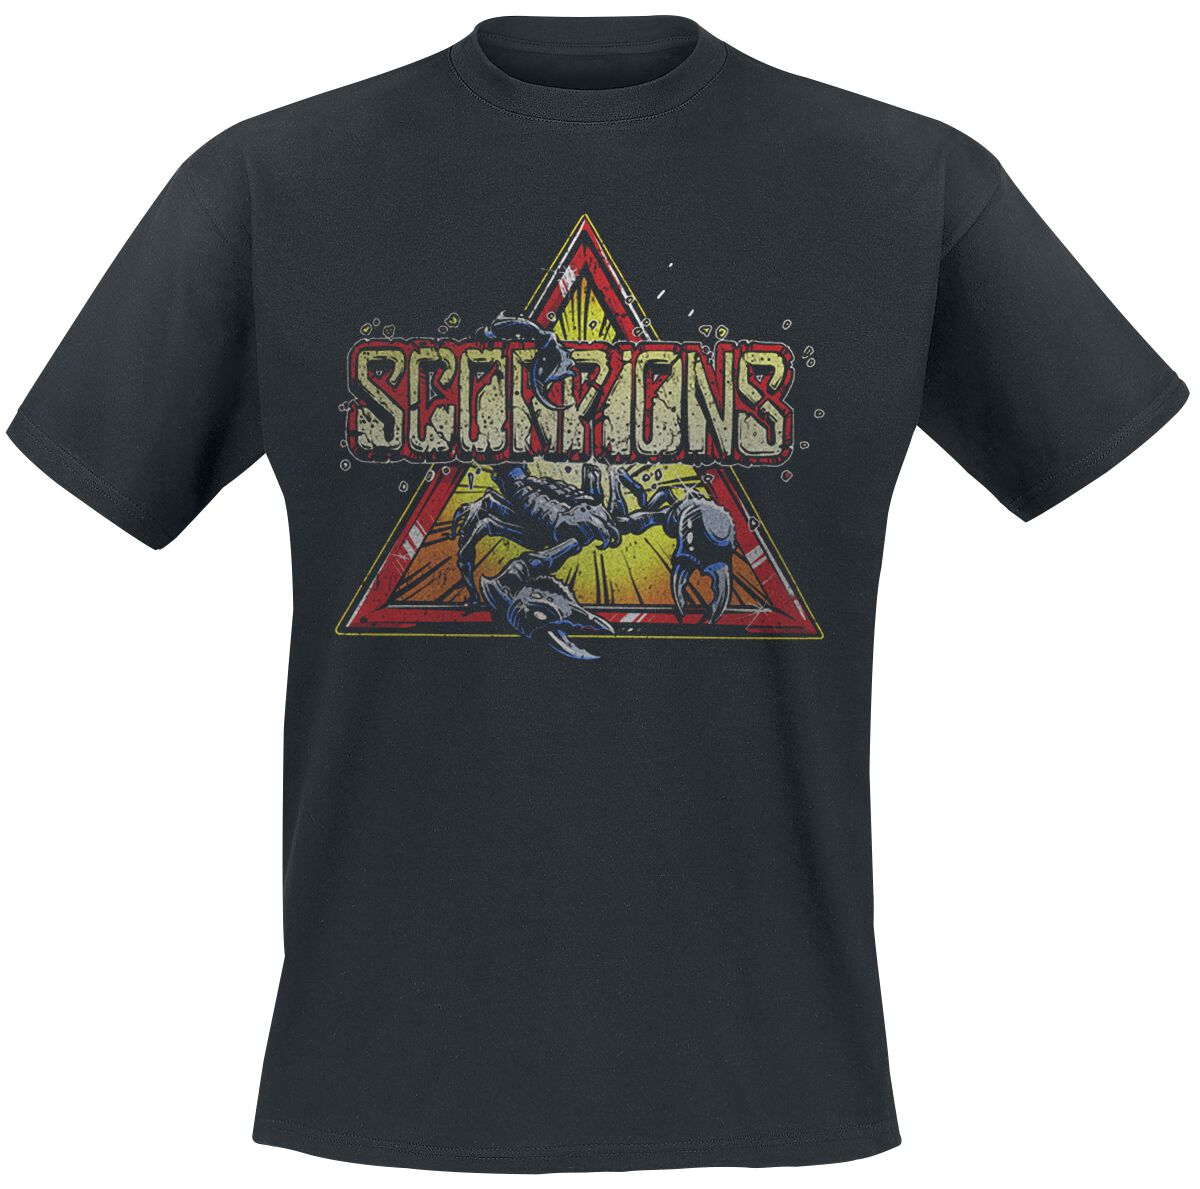 Scorpions T-Shirt - Triangle Scorpion - S bis 3XL - für Männer - Größe XL - schwarz  - Lizenziertes Merchandise!